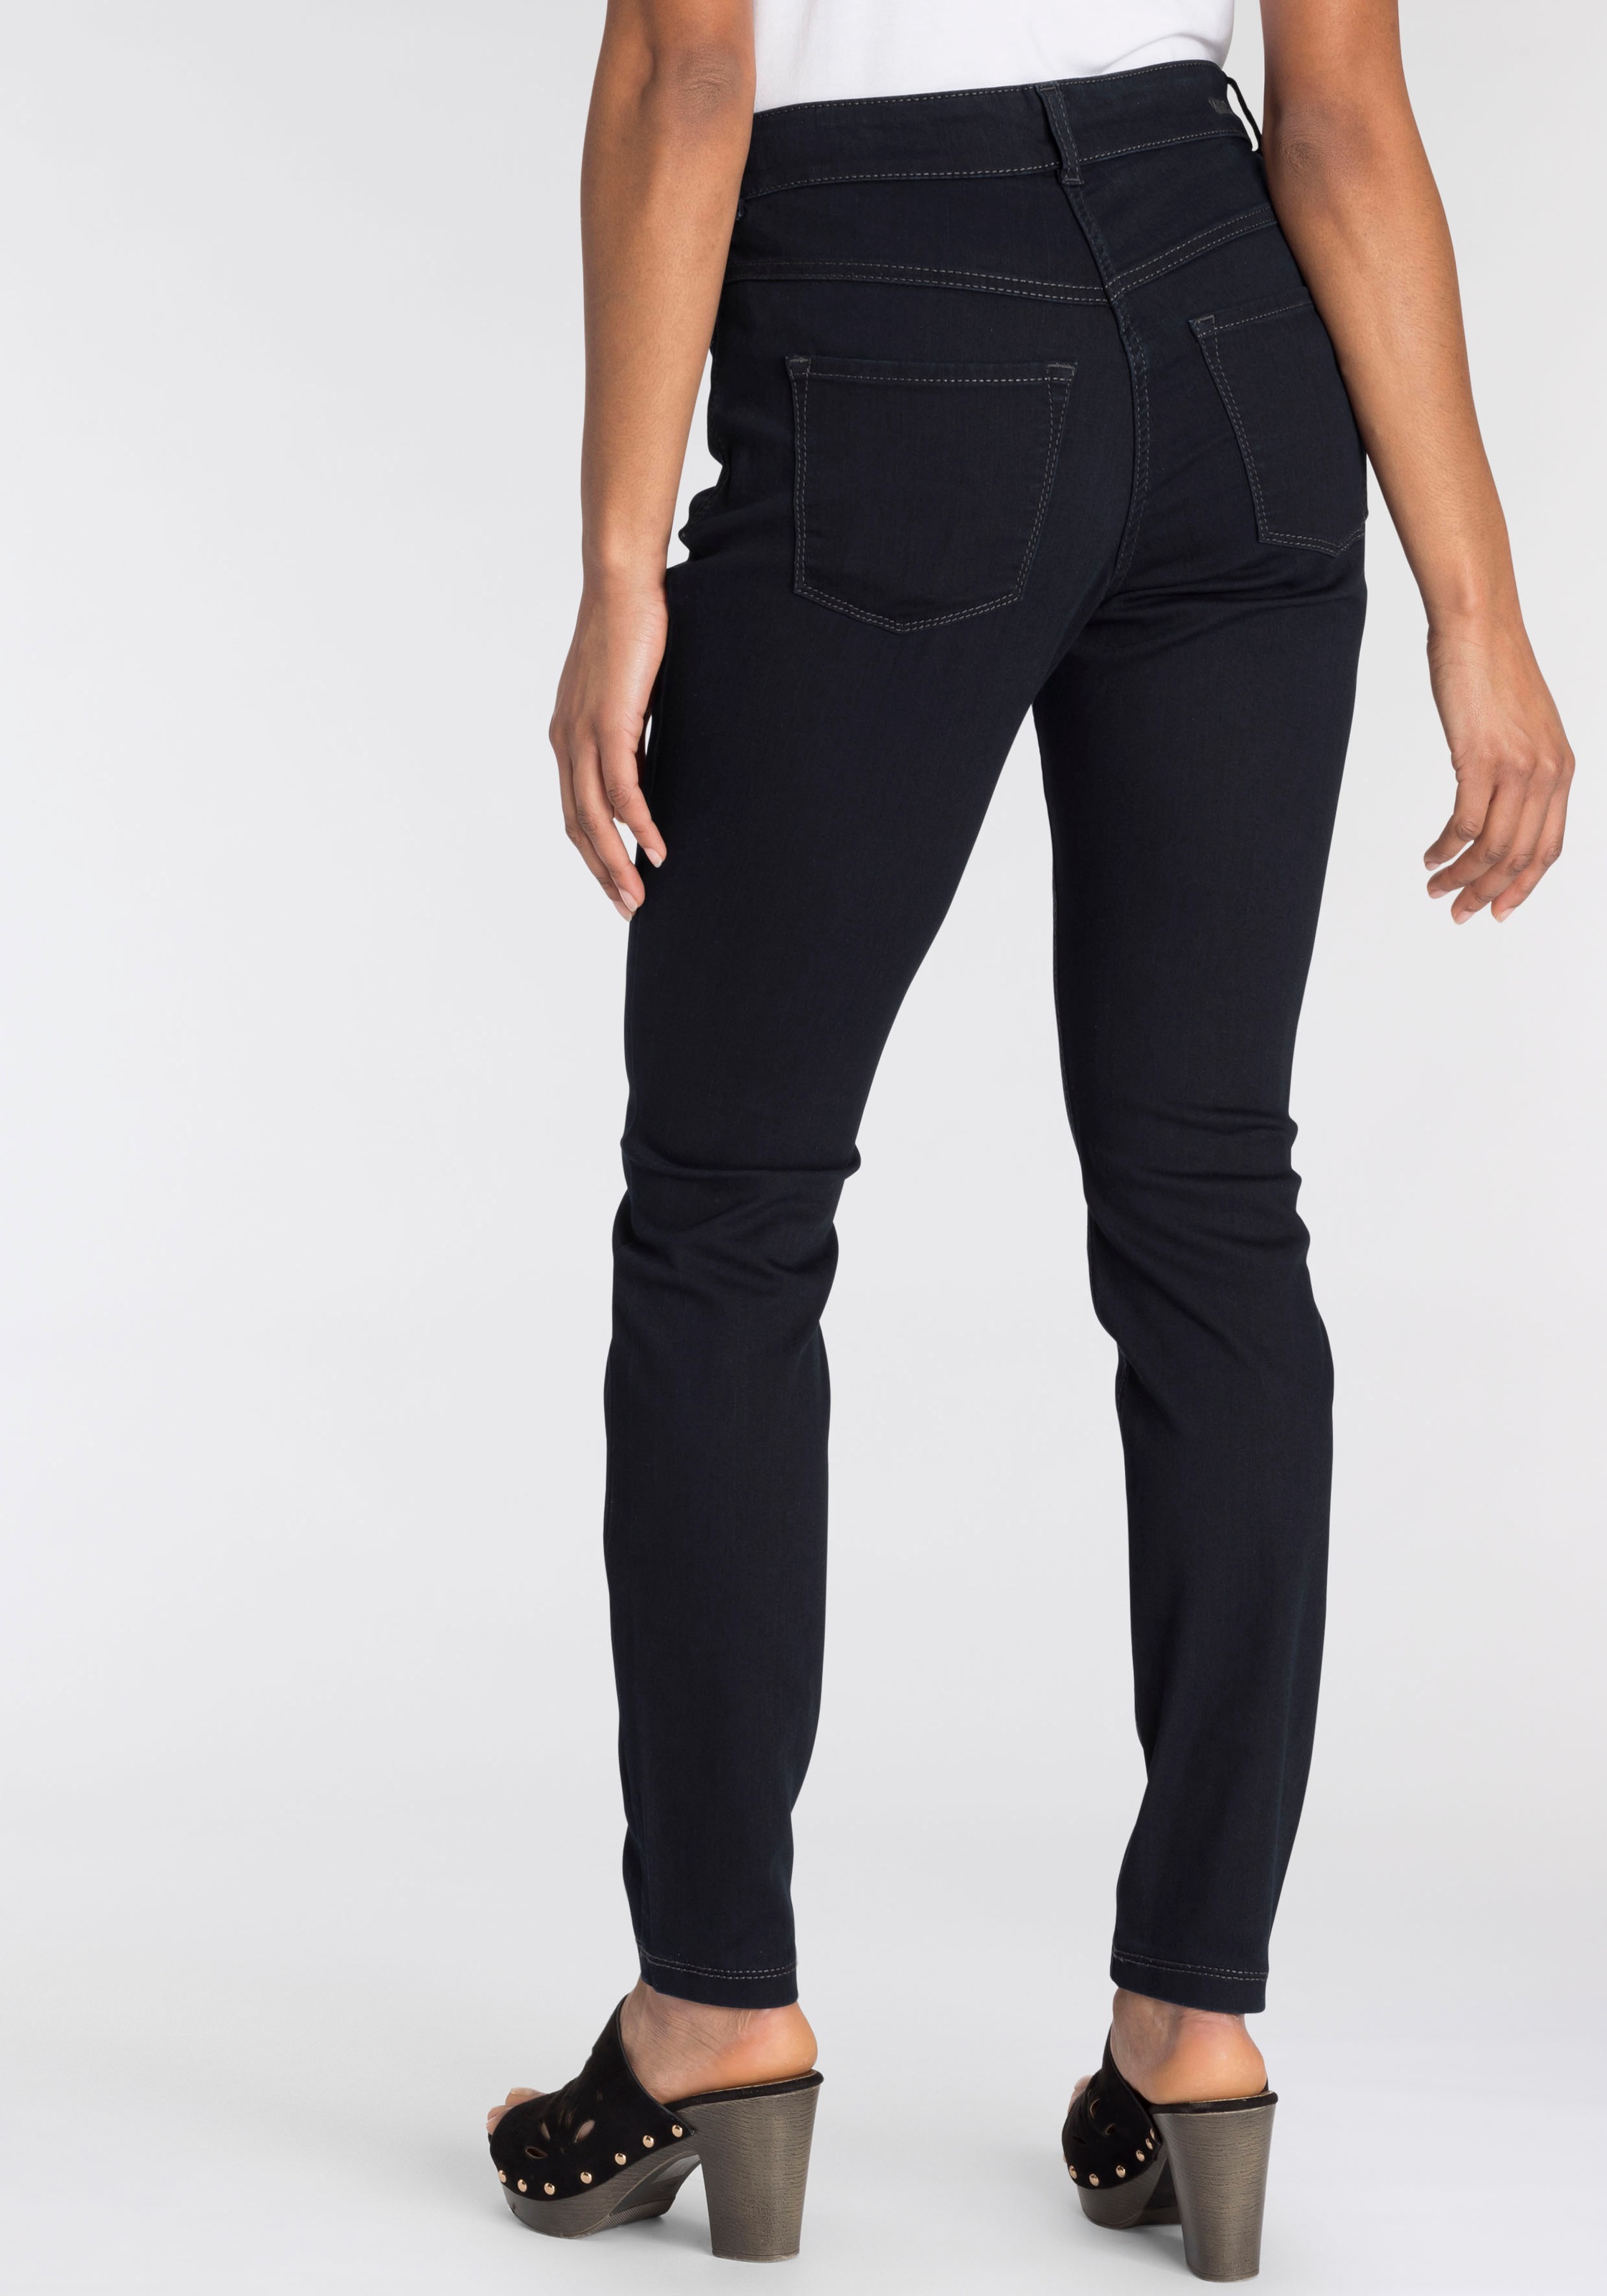 bestellen den »Hiperstretch-Skinny«, Power-Stretch bequem Qualität sitzt ganzen Tag MAC Skinny-fit-Jeans